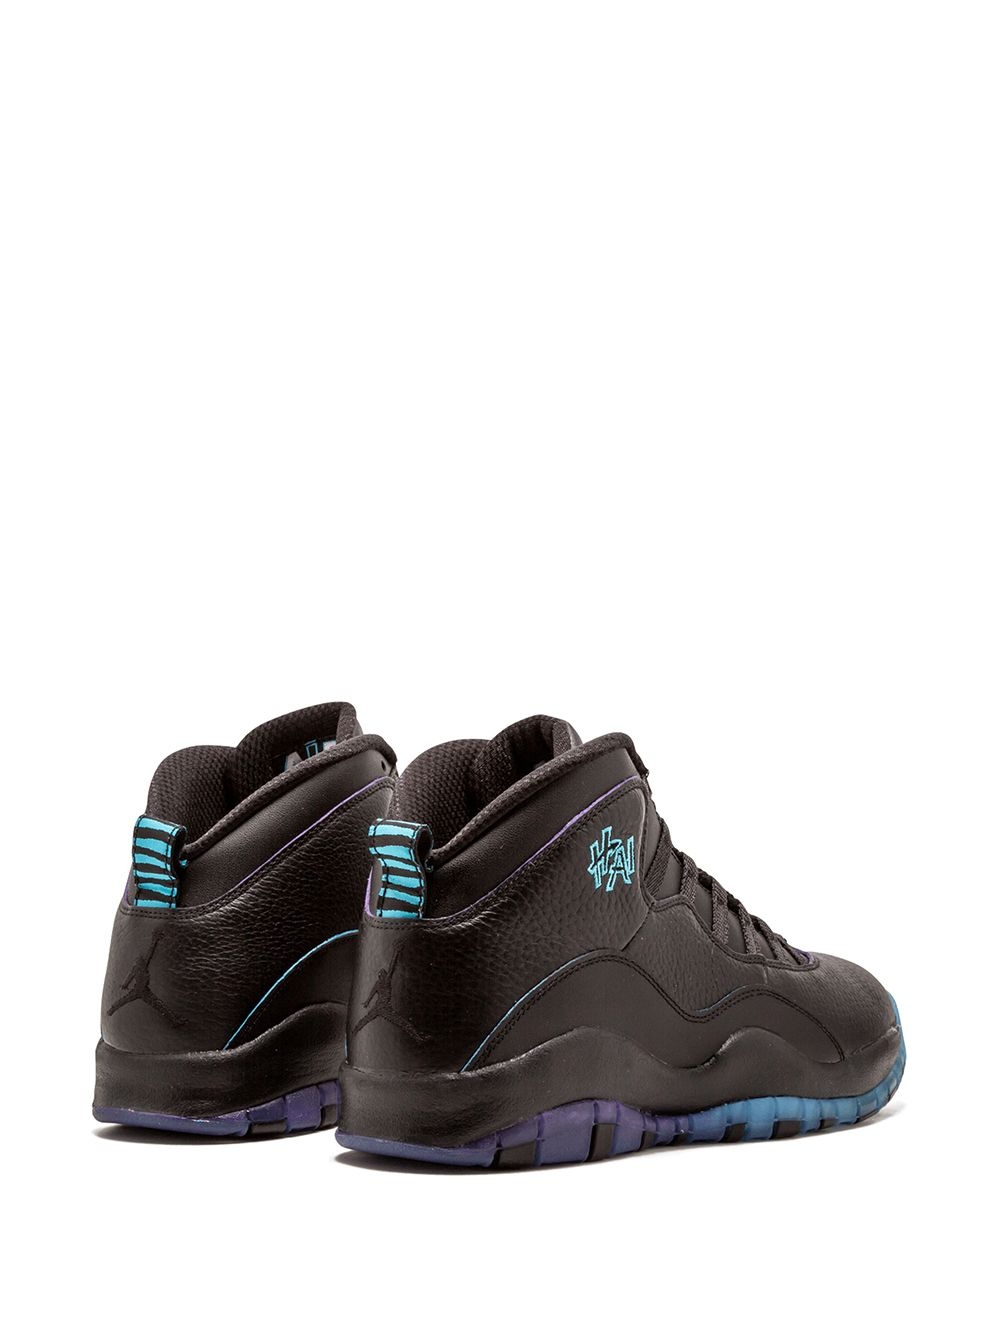 Air Jordan Retro 10 "Shanghai" sneakers - 3